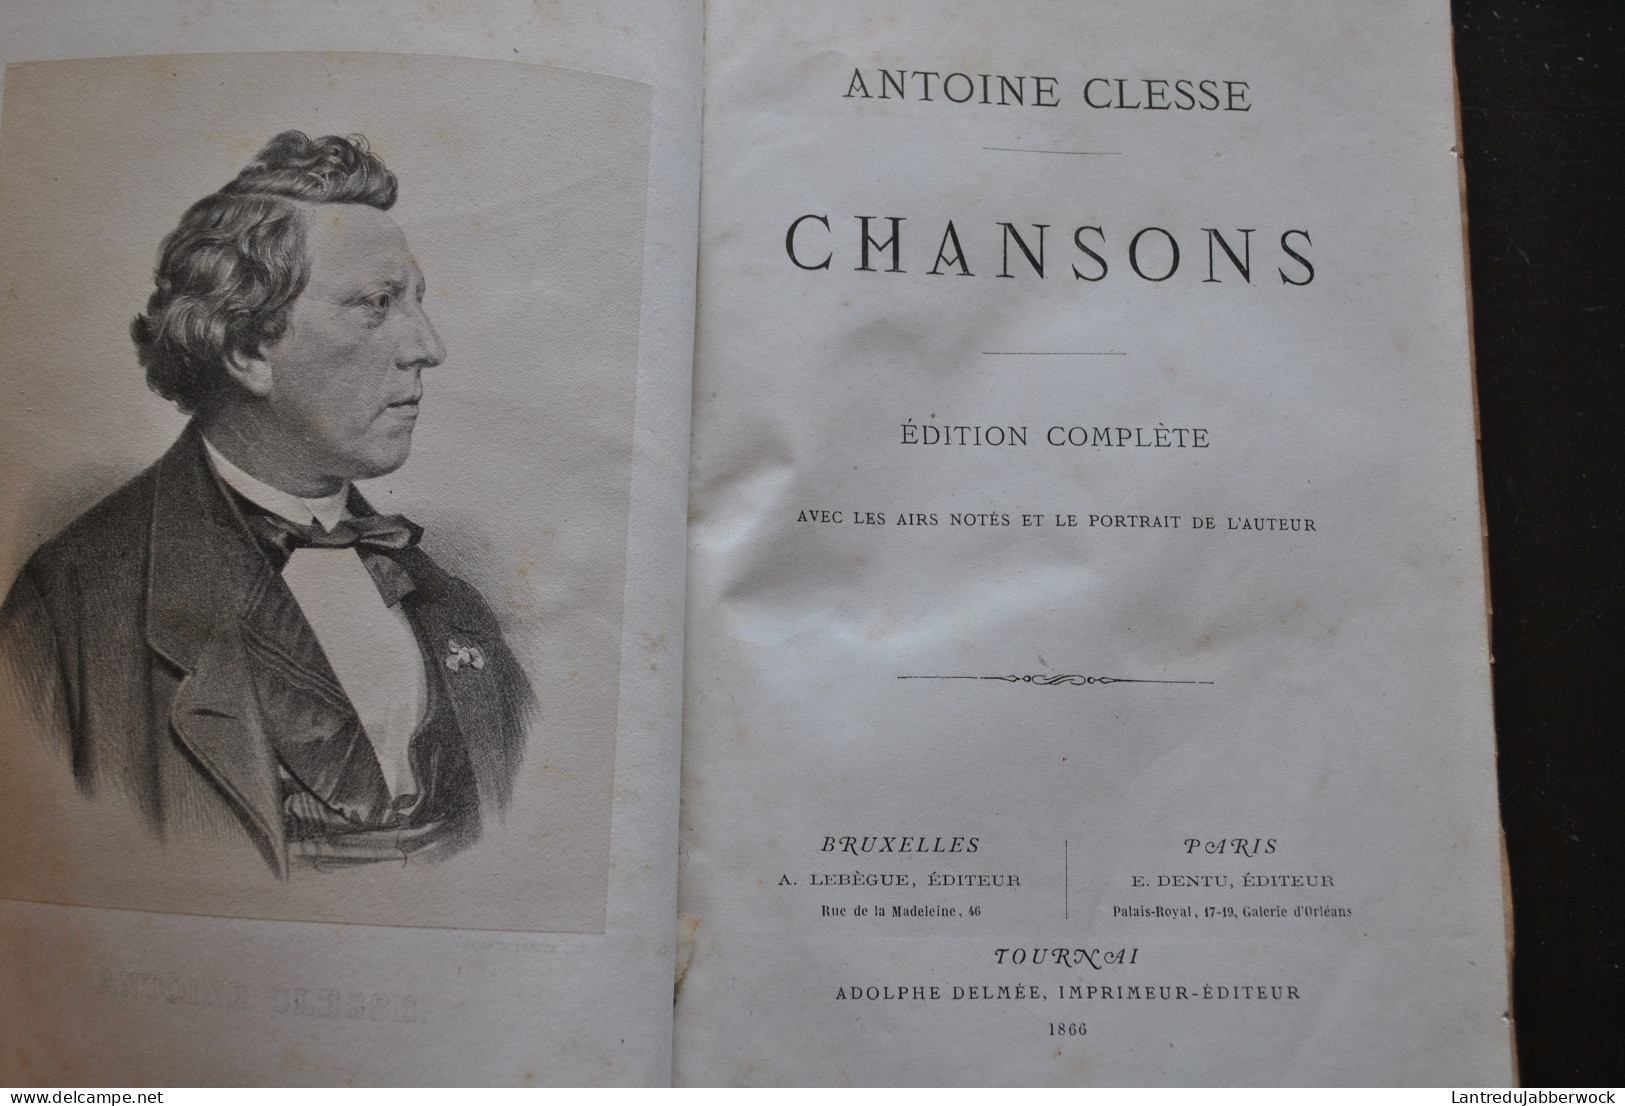 ANTOINE CLESSE CHANSONS Edition Complète Airs Notés 1866 Régionalisme CHANSONNIER BELGIQUE MUSIQUE PATRIMOINE FOLKLORE - Belgien